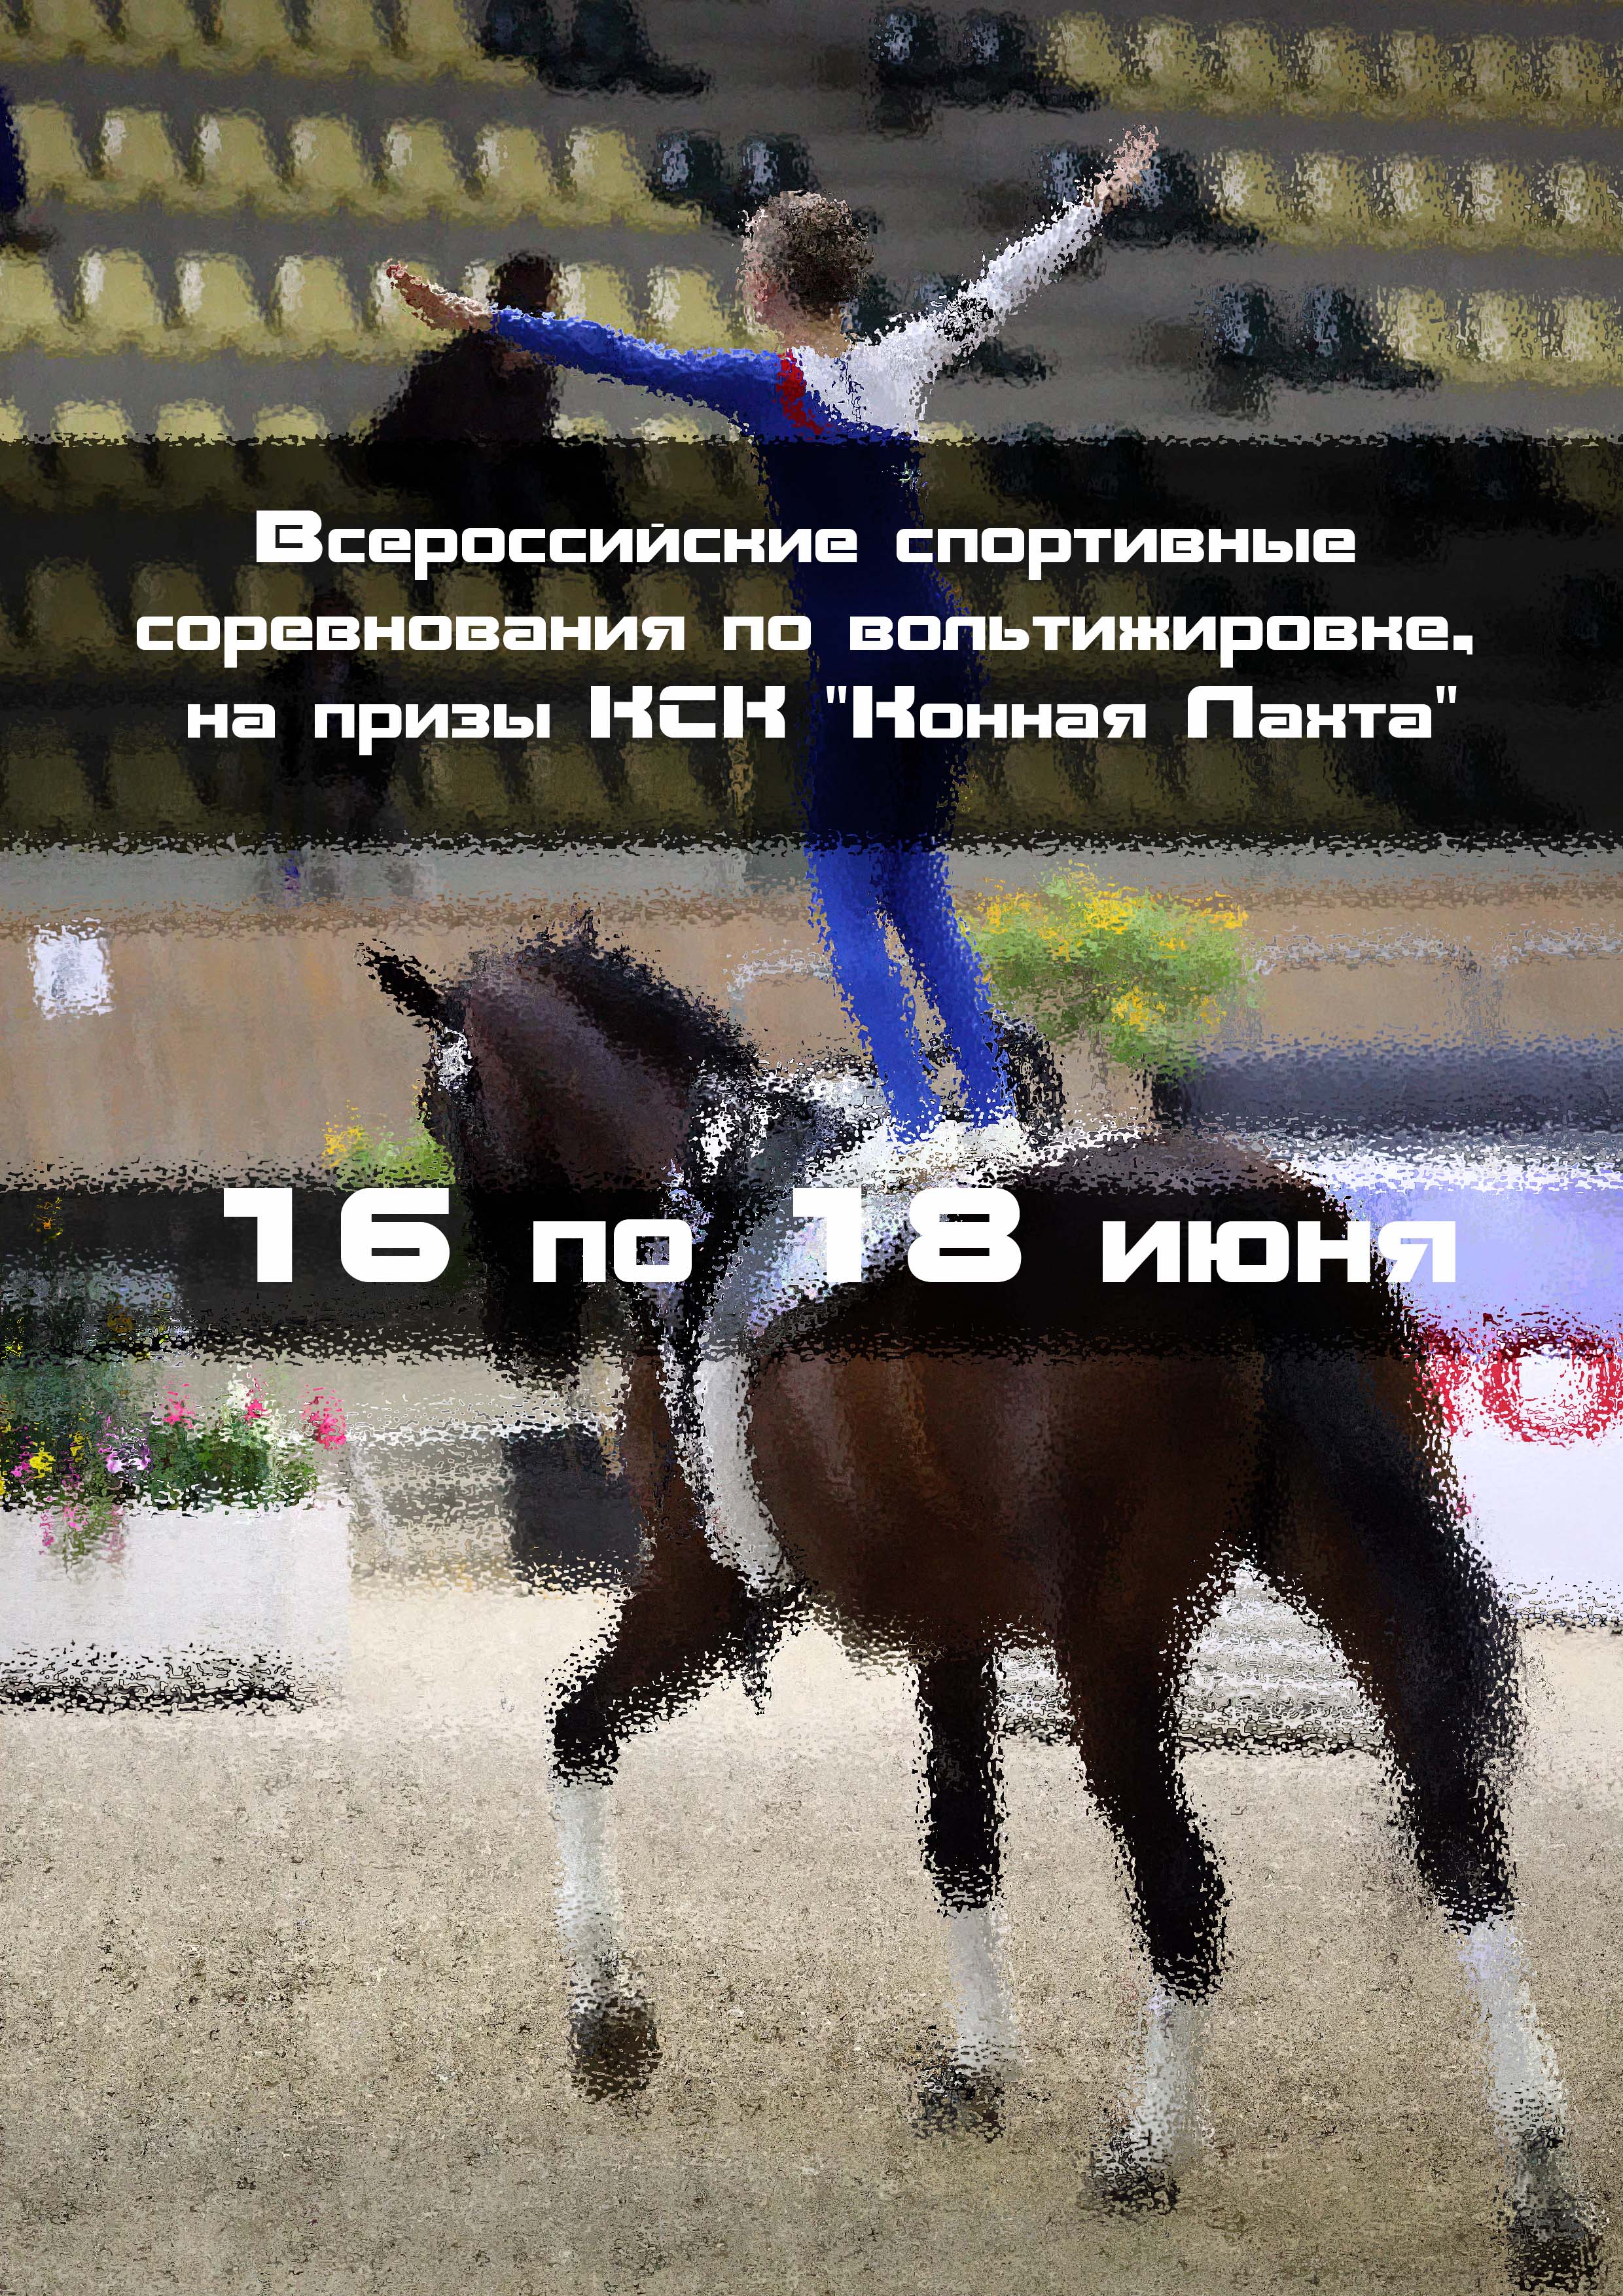 Всероссийские спортивные соревнования по вольтижировке, на призы КСК "Конная Лахта" 16  juuni
 2023  aasta
 